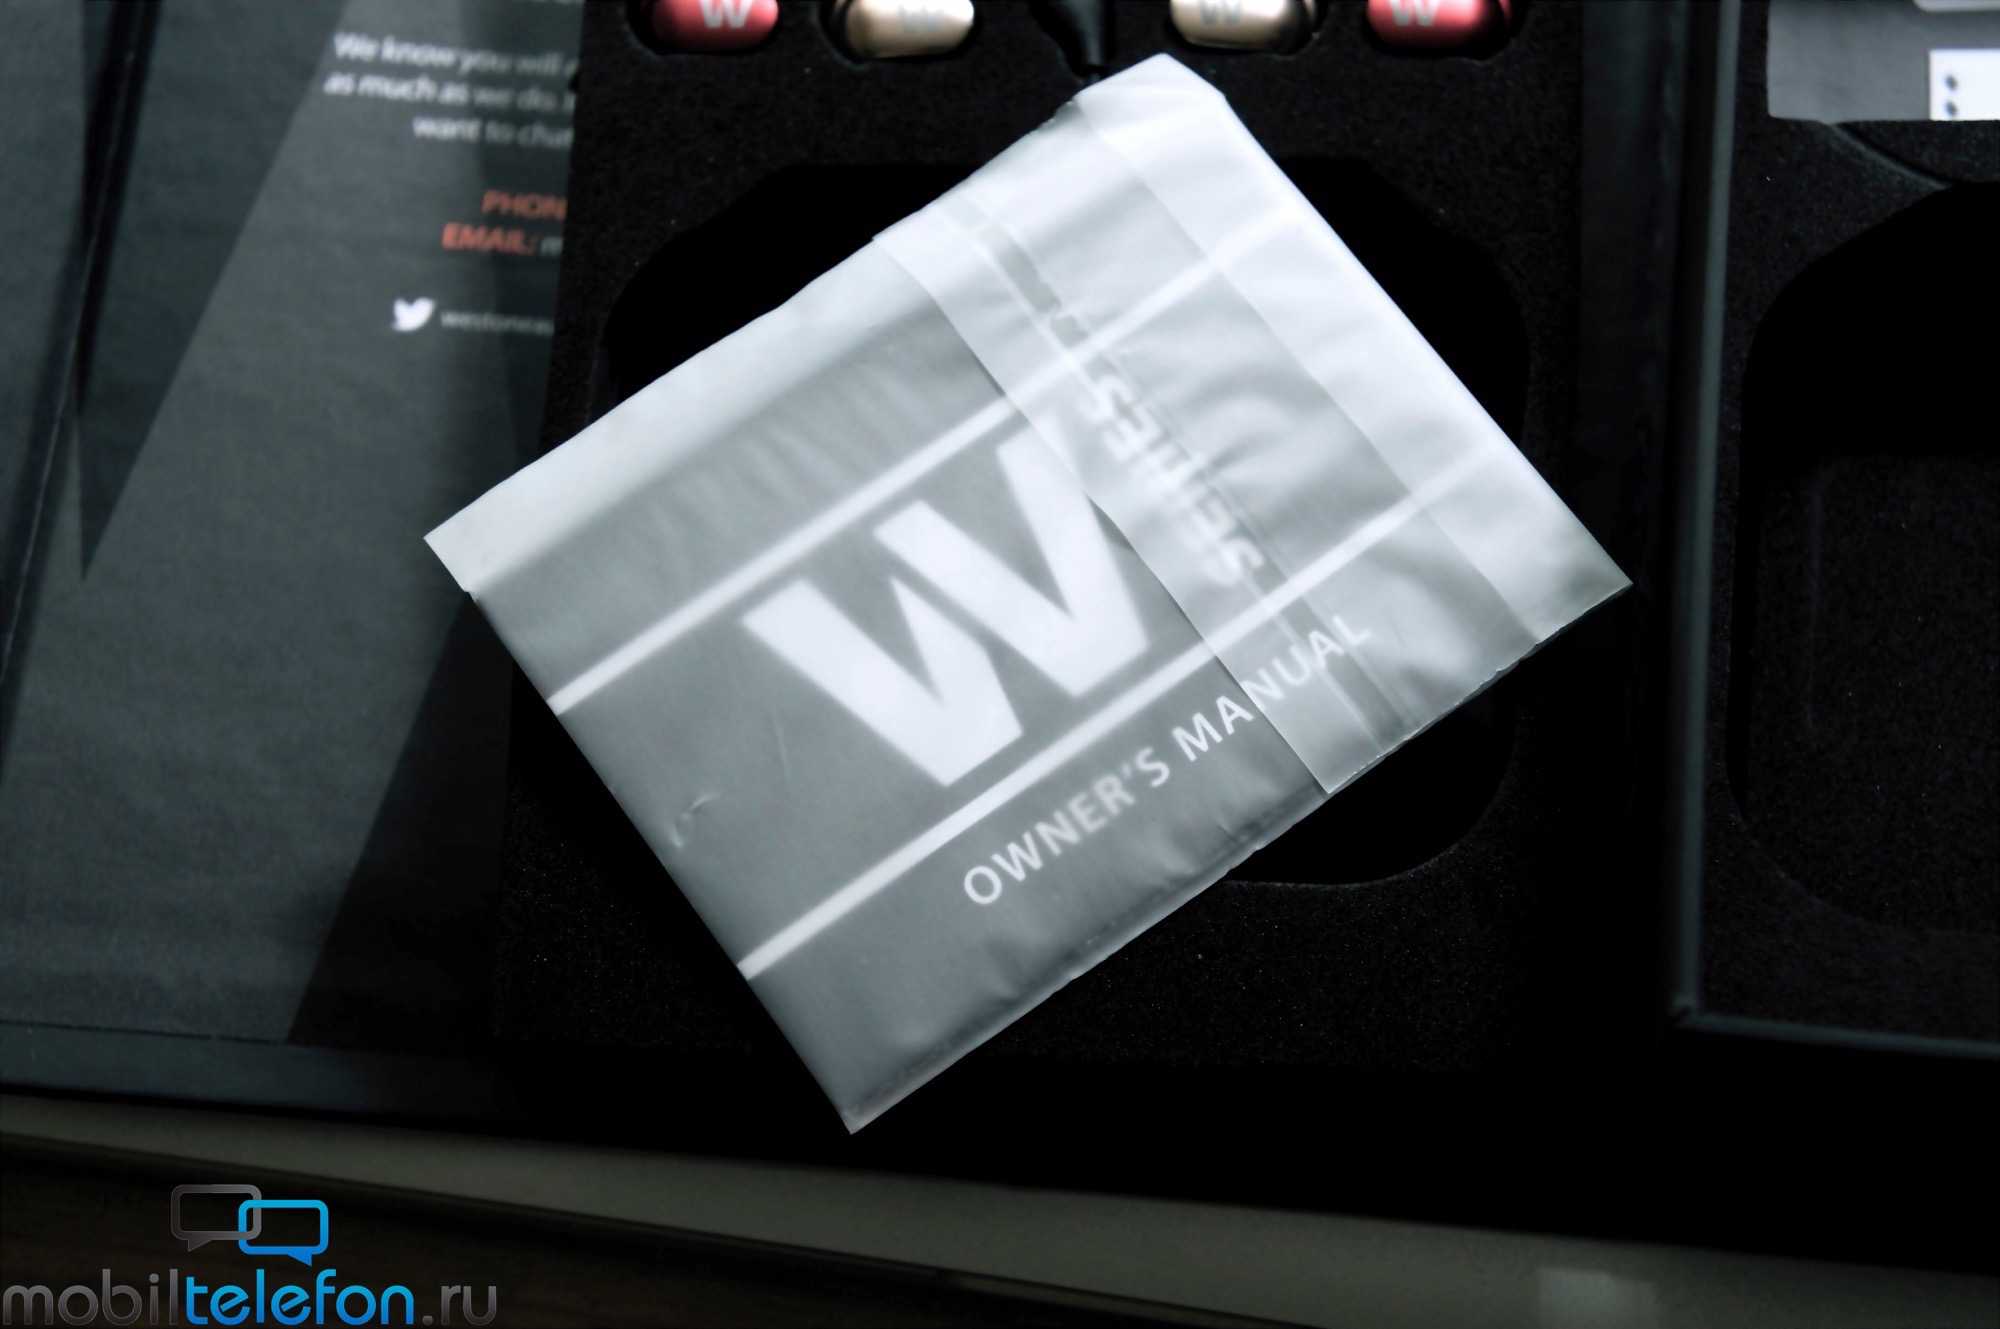 Наушники внутриканальные westone w50 (черный) купить за 50590 руб в екатеринбурге, отзывы, видео обзоры и характеристики